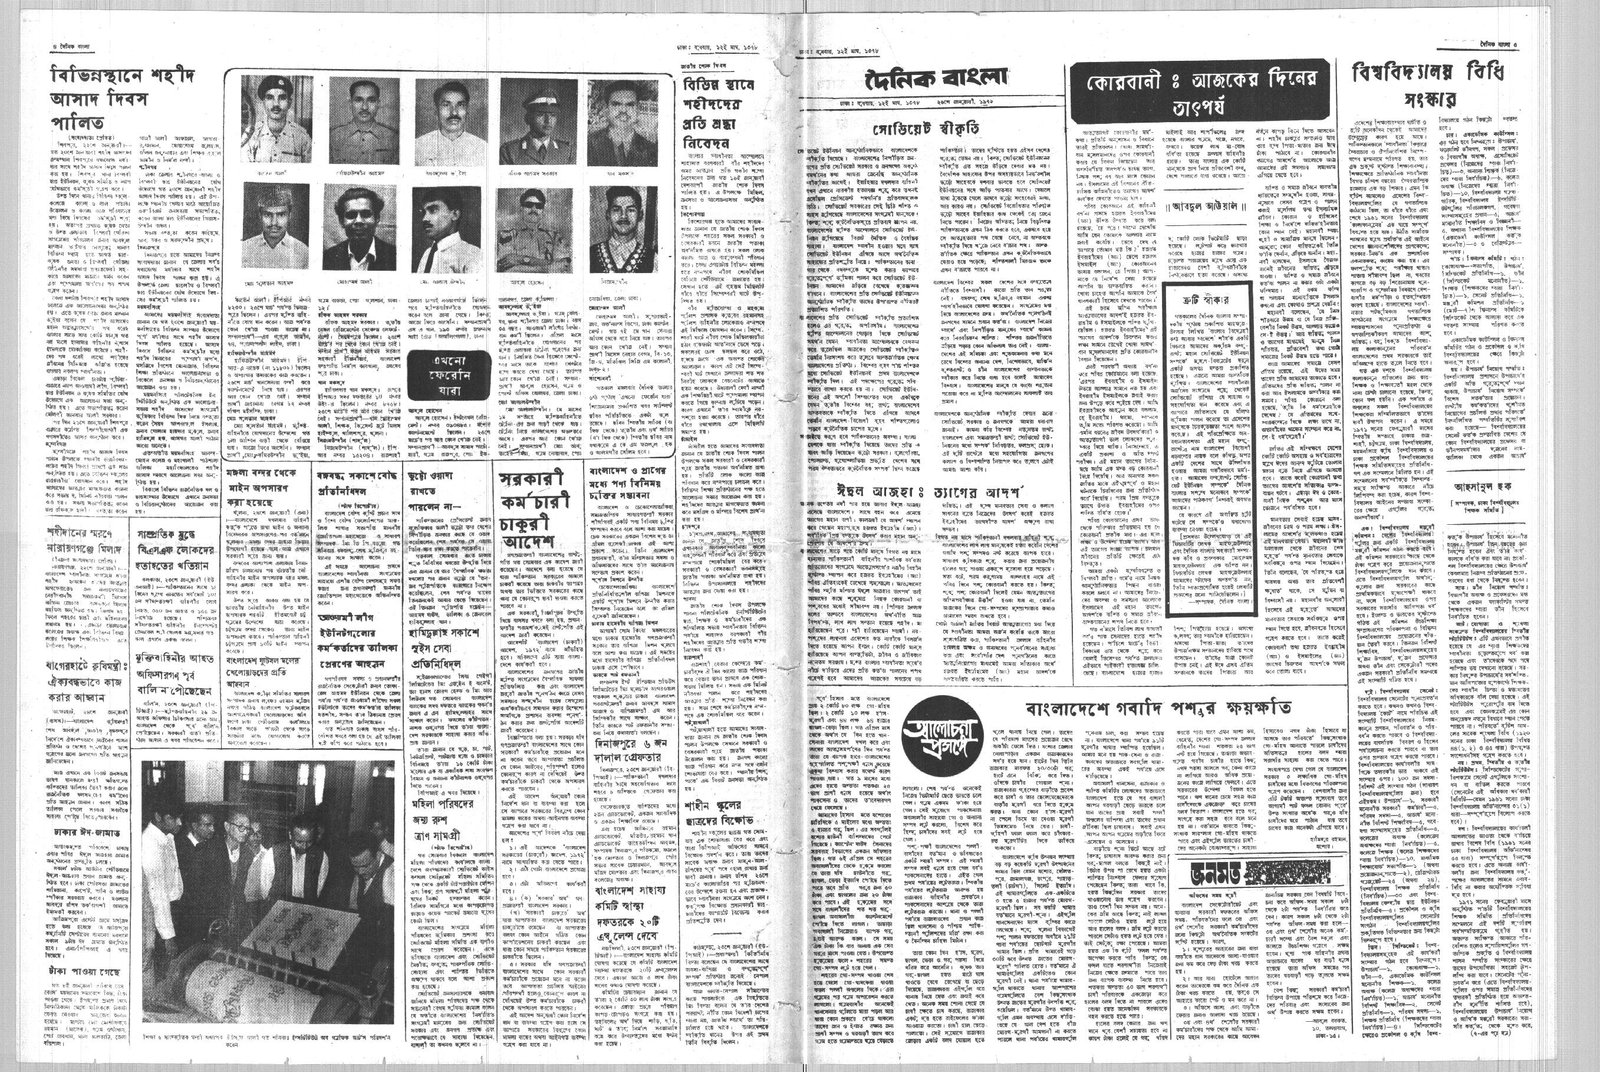 26JAN1972-DAINIK BANGLA-Regular-Page 4 and 5